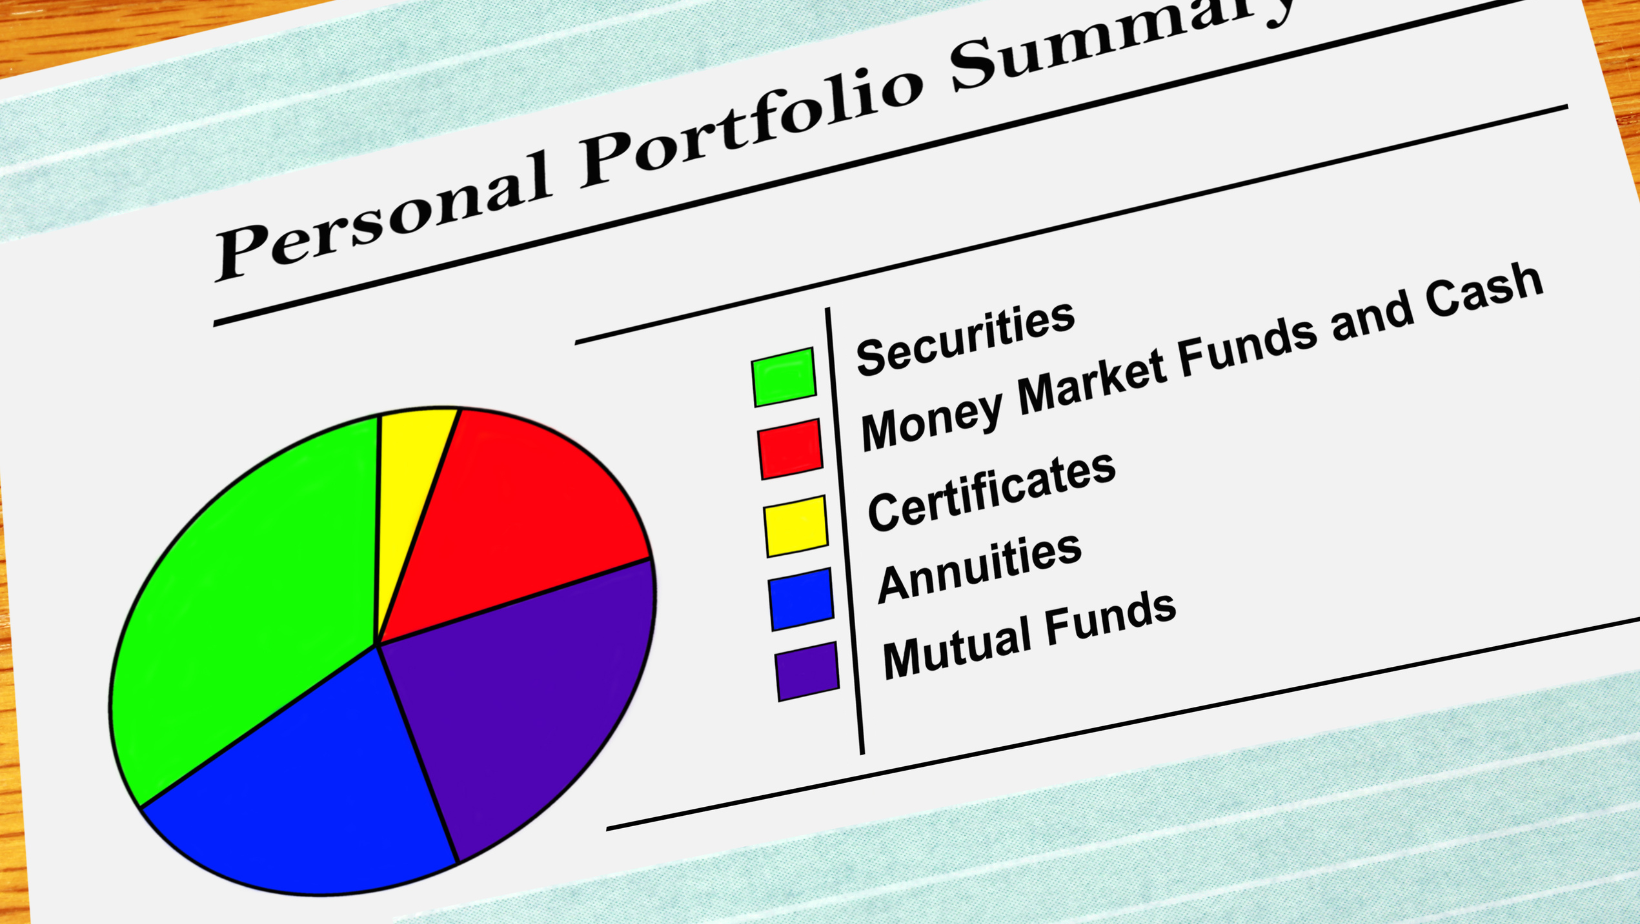 What are model portfolios?